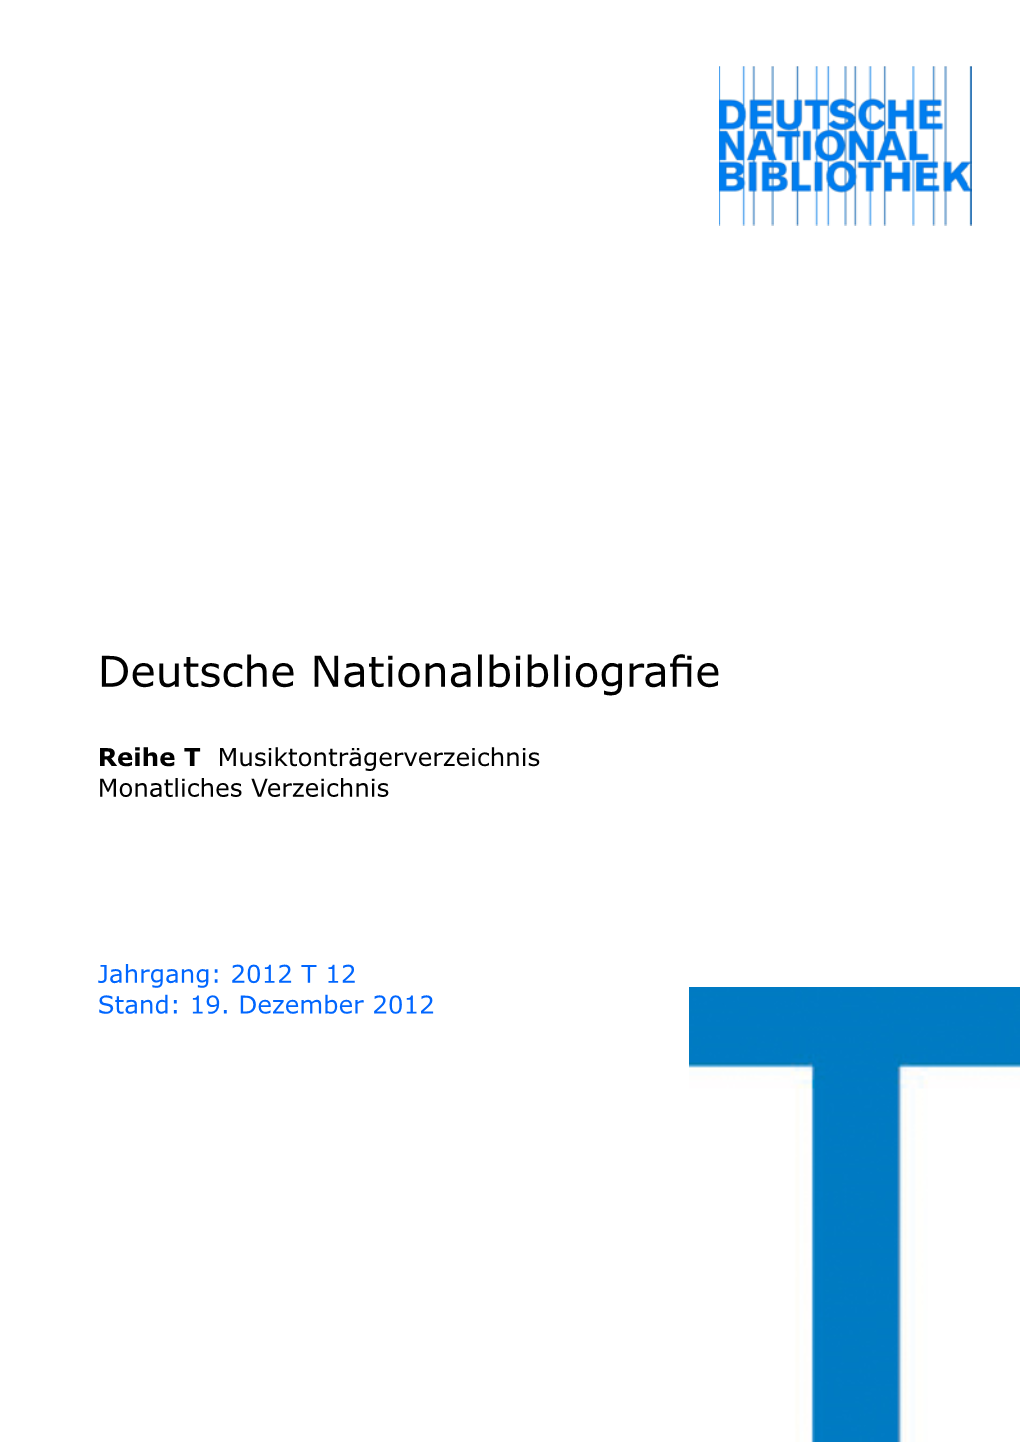 Deutsche Nationalbibliografie 2012 T 12